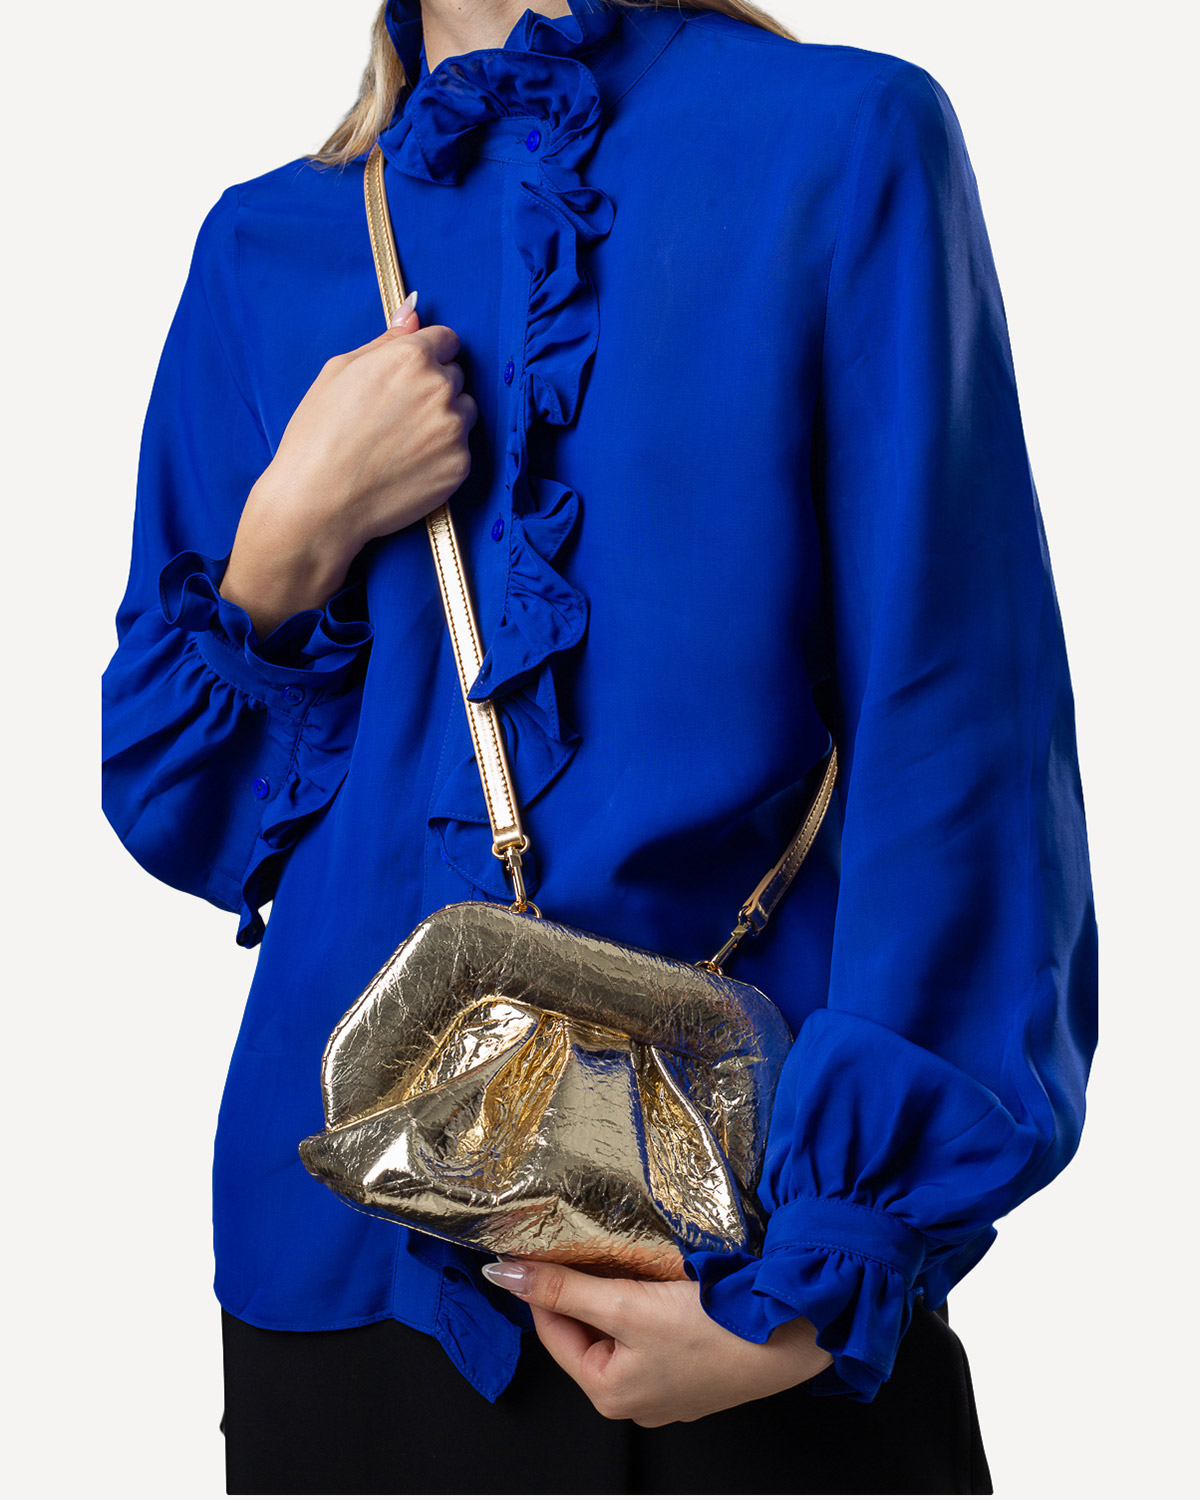 Γυναίκα - Mini Bags - THEMOIRe Χρυσό